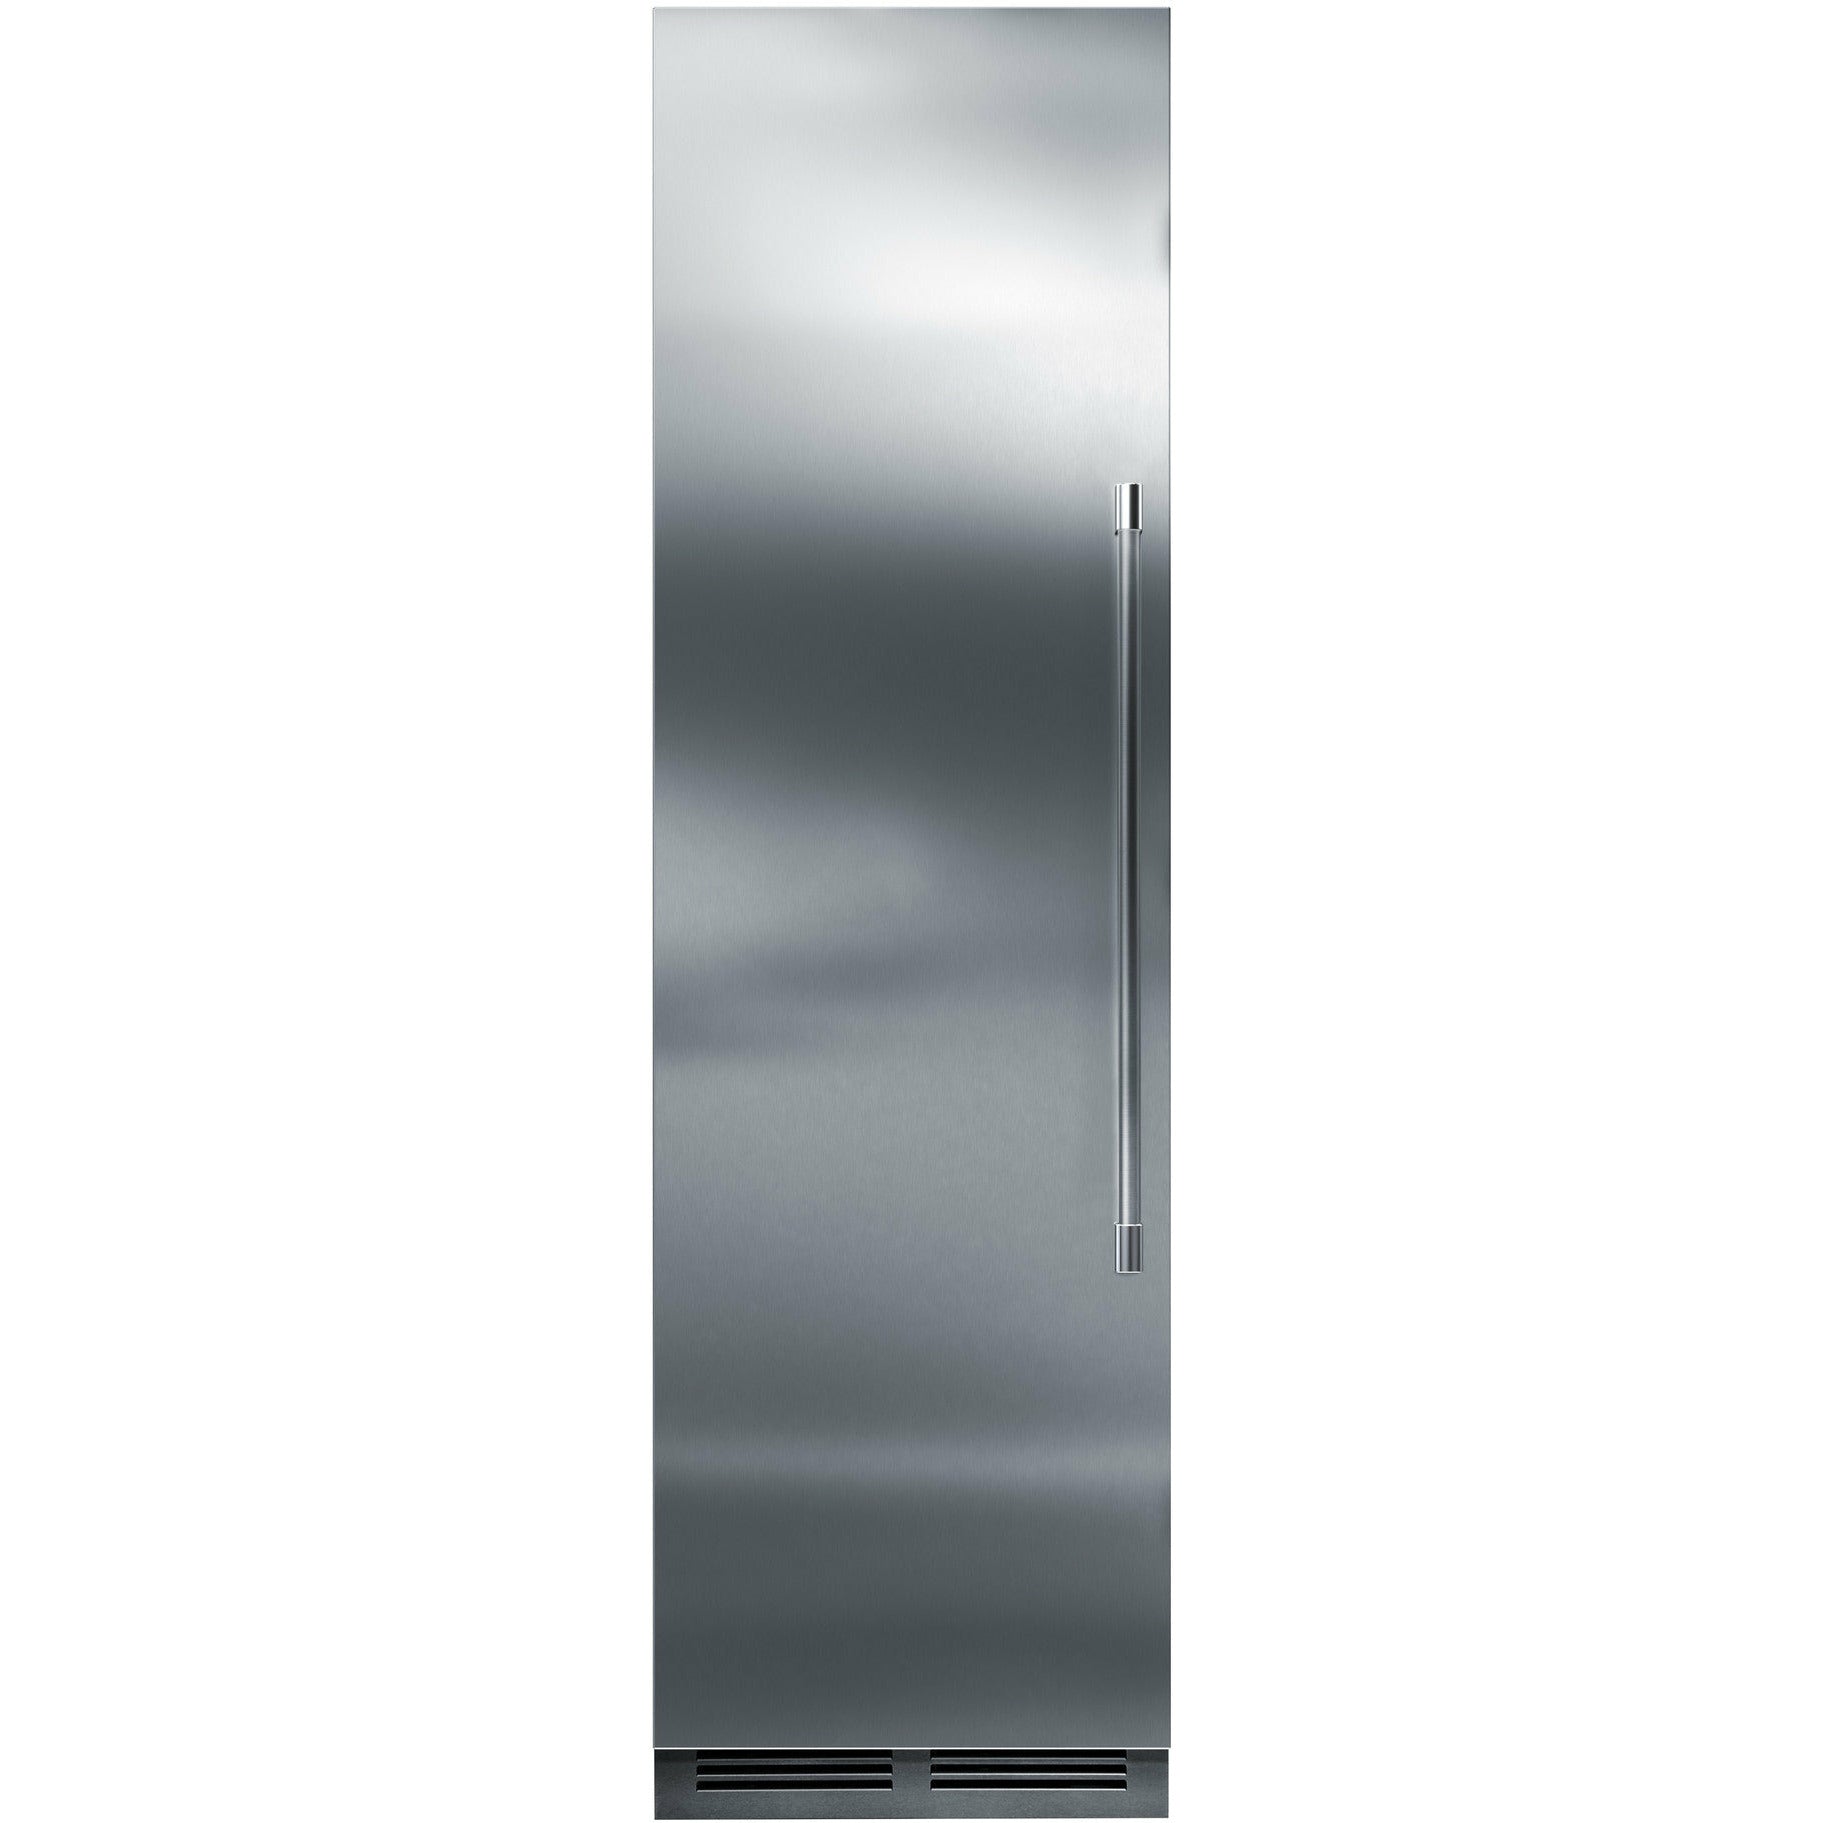 Perlick 24" All Freezer with Theatre Lighting, Solid Overlay Door - CR24F-1-2